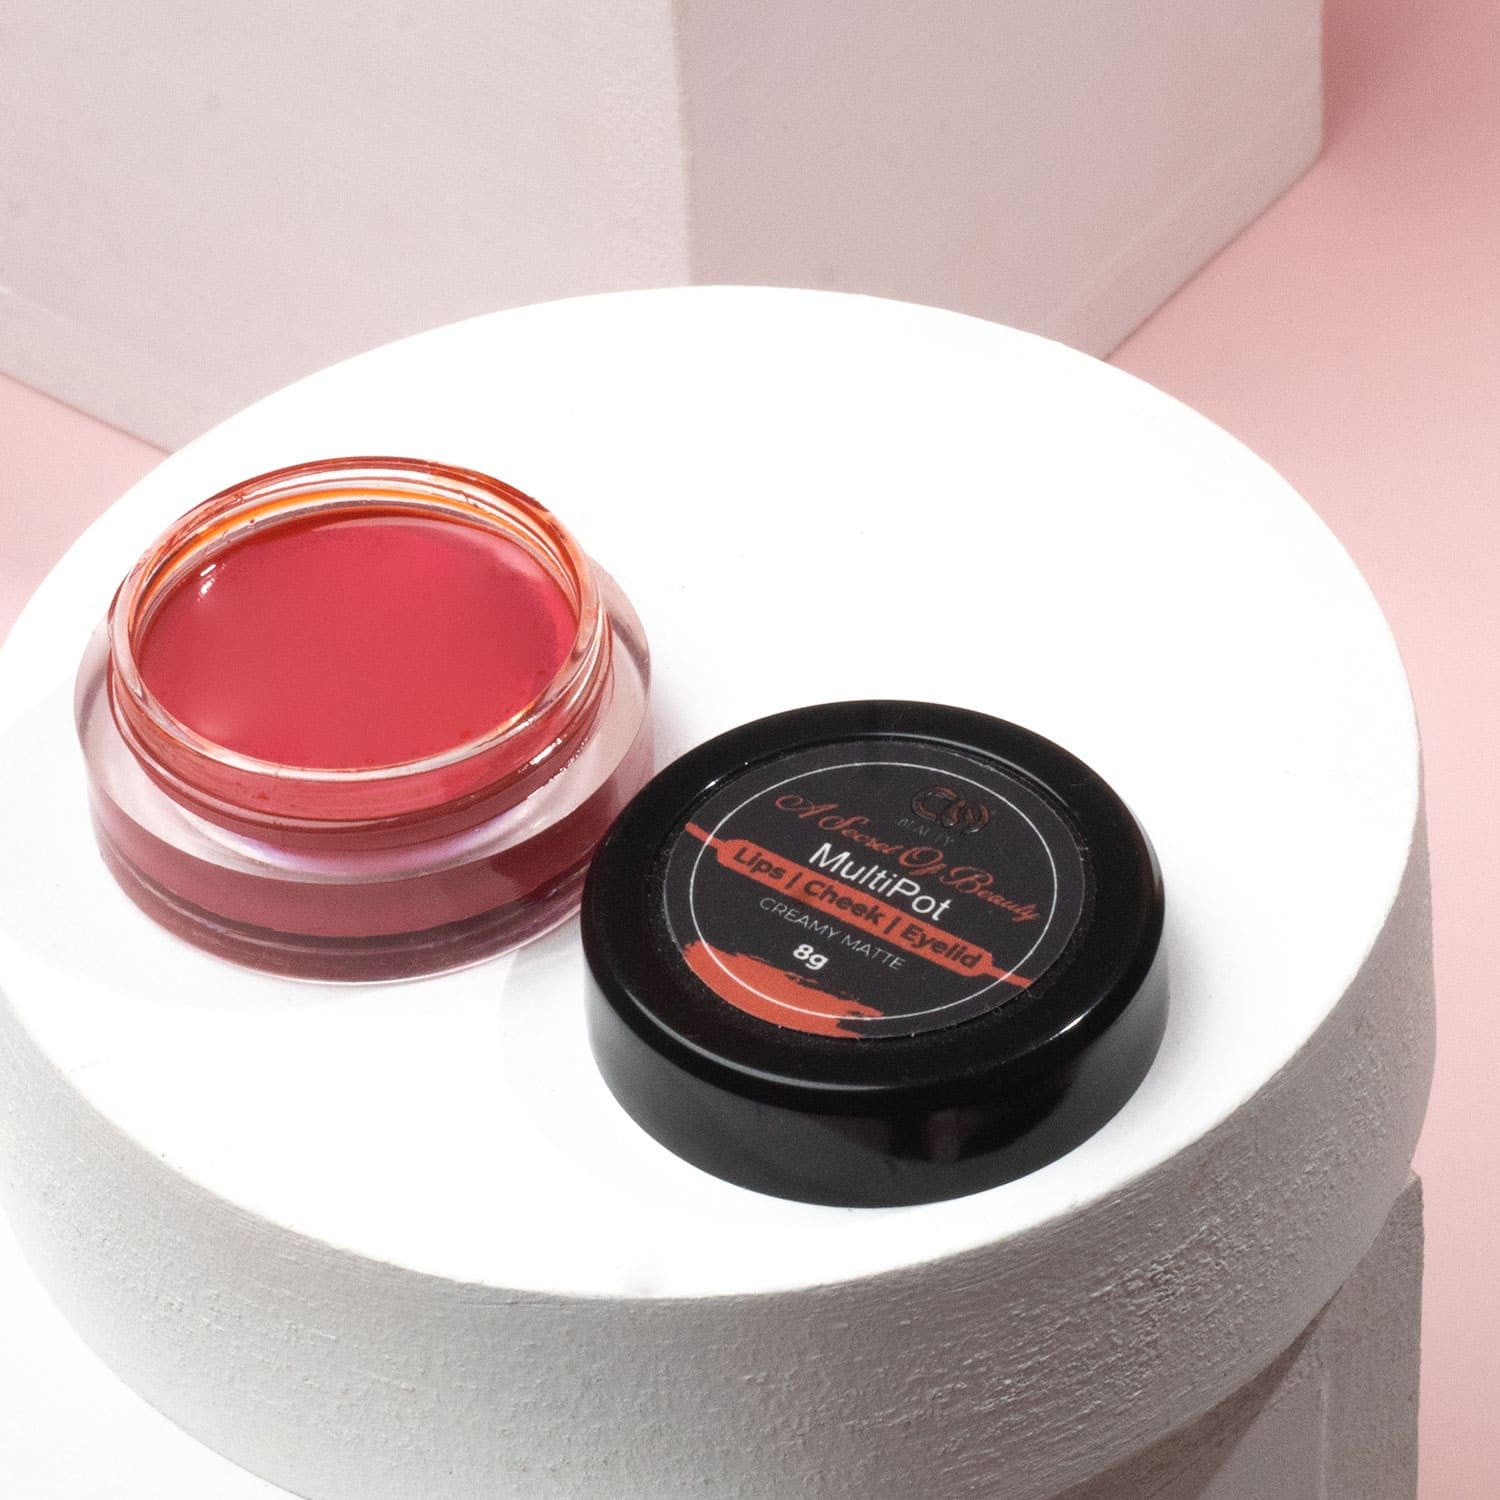 Co-Beauty 3-in-1 Multipot - Lip, Cheek & Eyelid Tint - "Secret of Beauty" (Burnt Orange)